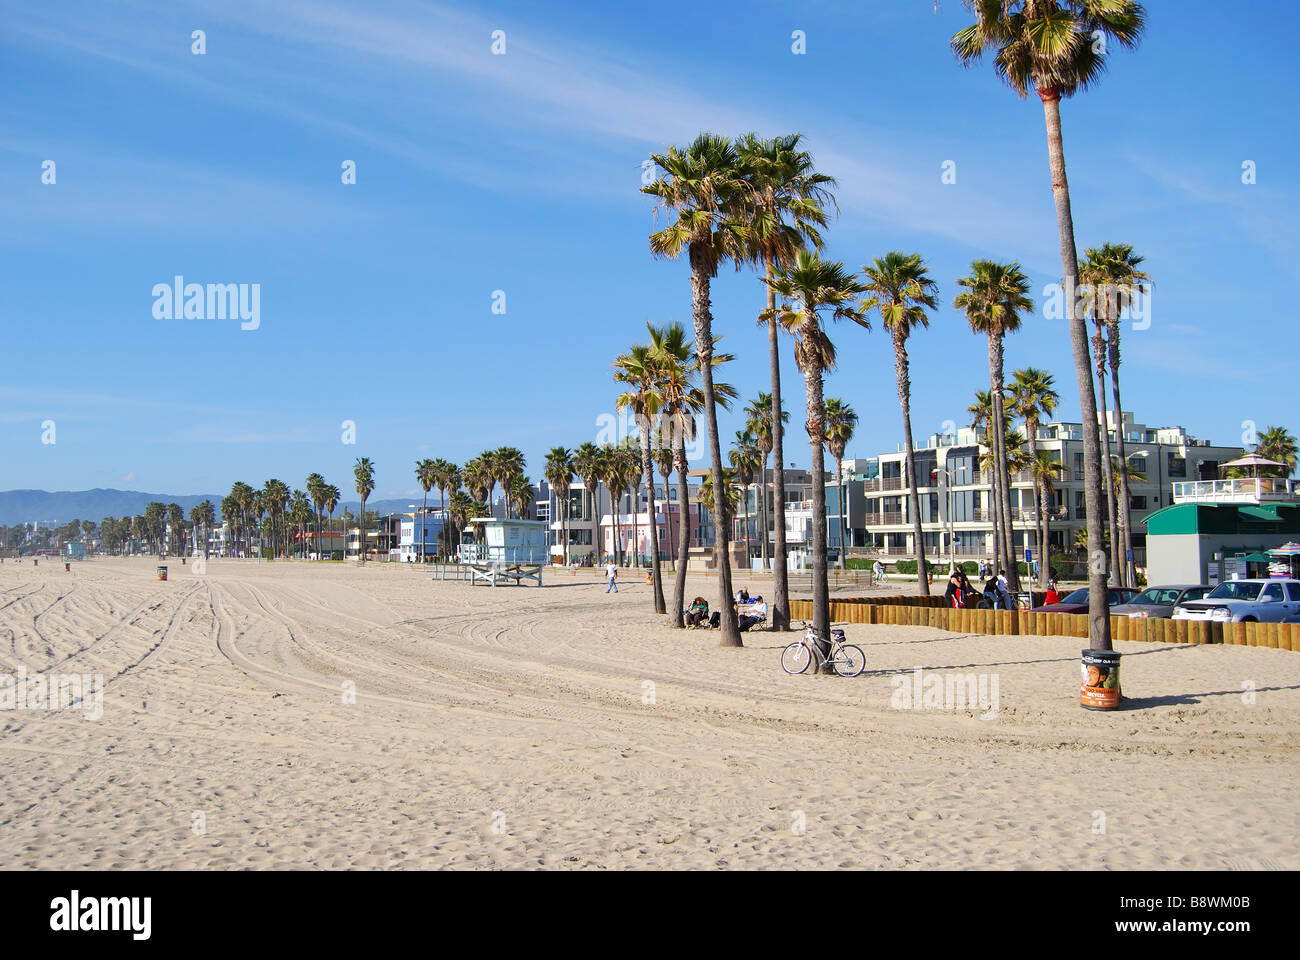 Venice Beach, Los Angeles Westside, Los Angeles, Californie, États-Unis d'Amérique Banque D'Images